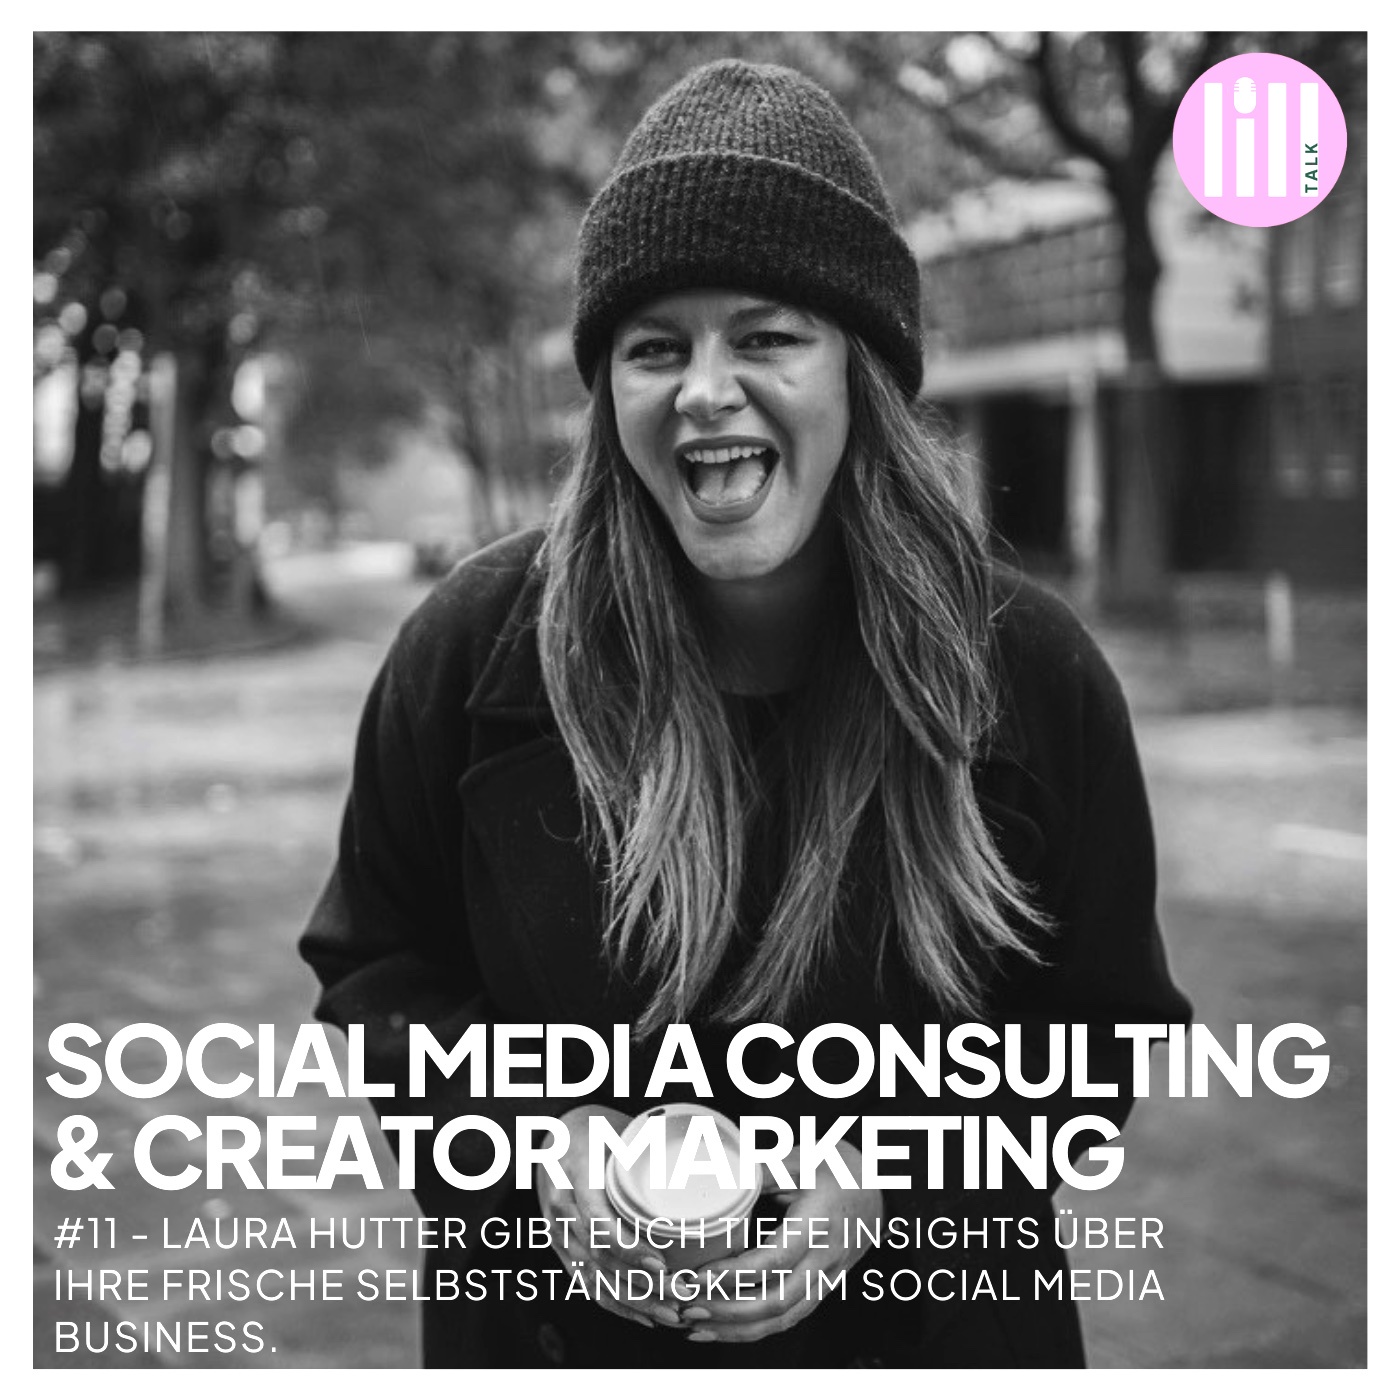 #11 SOCIAL MEDIA CONSULTING & CREATOR MARKETING - Laura Hutter gibt tiefe Insights über ihre frische Selbstständigkeit